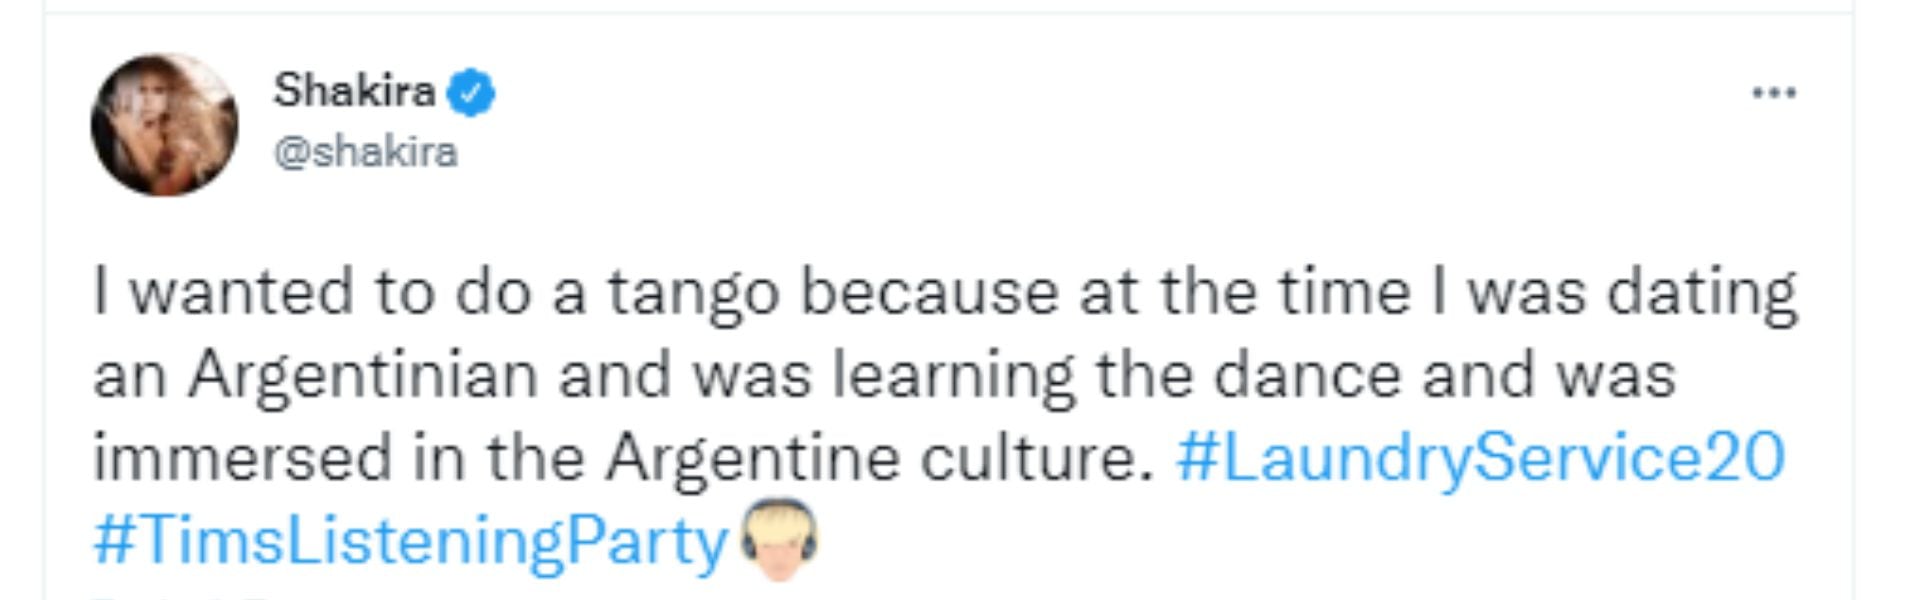 El tweet de Shakira aludiendo a su relación con Antonio De la Rúa